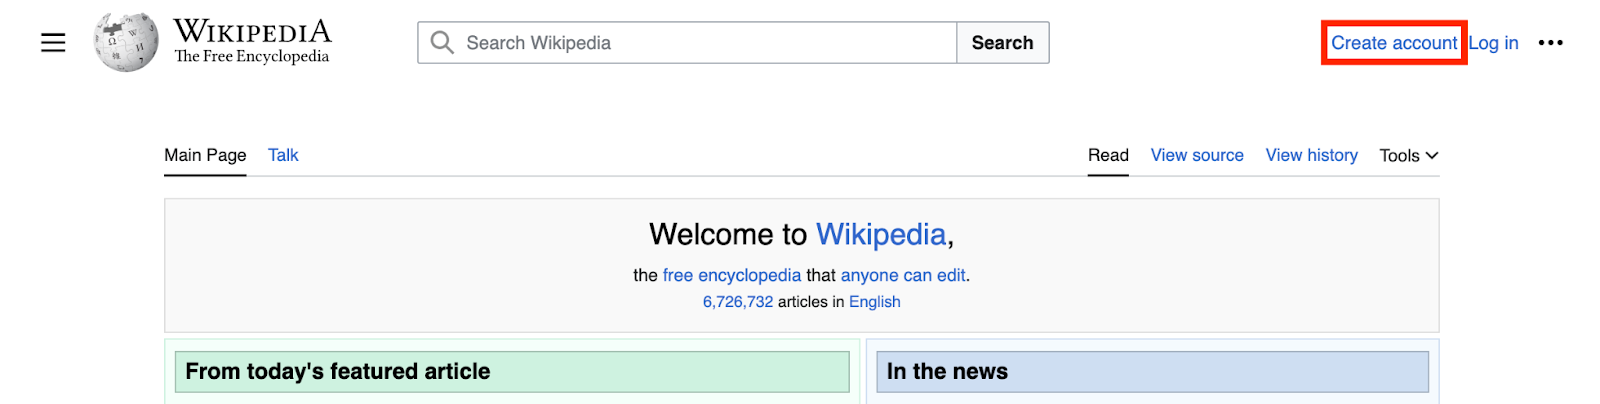 Auto clicker - Wikipedia